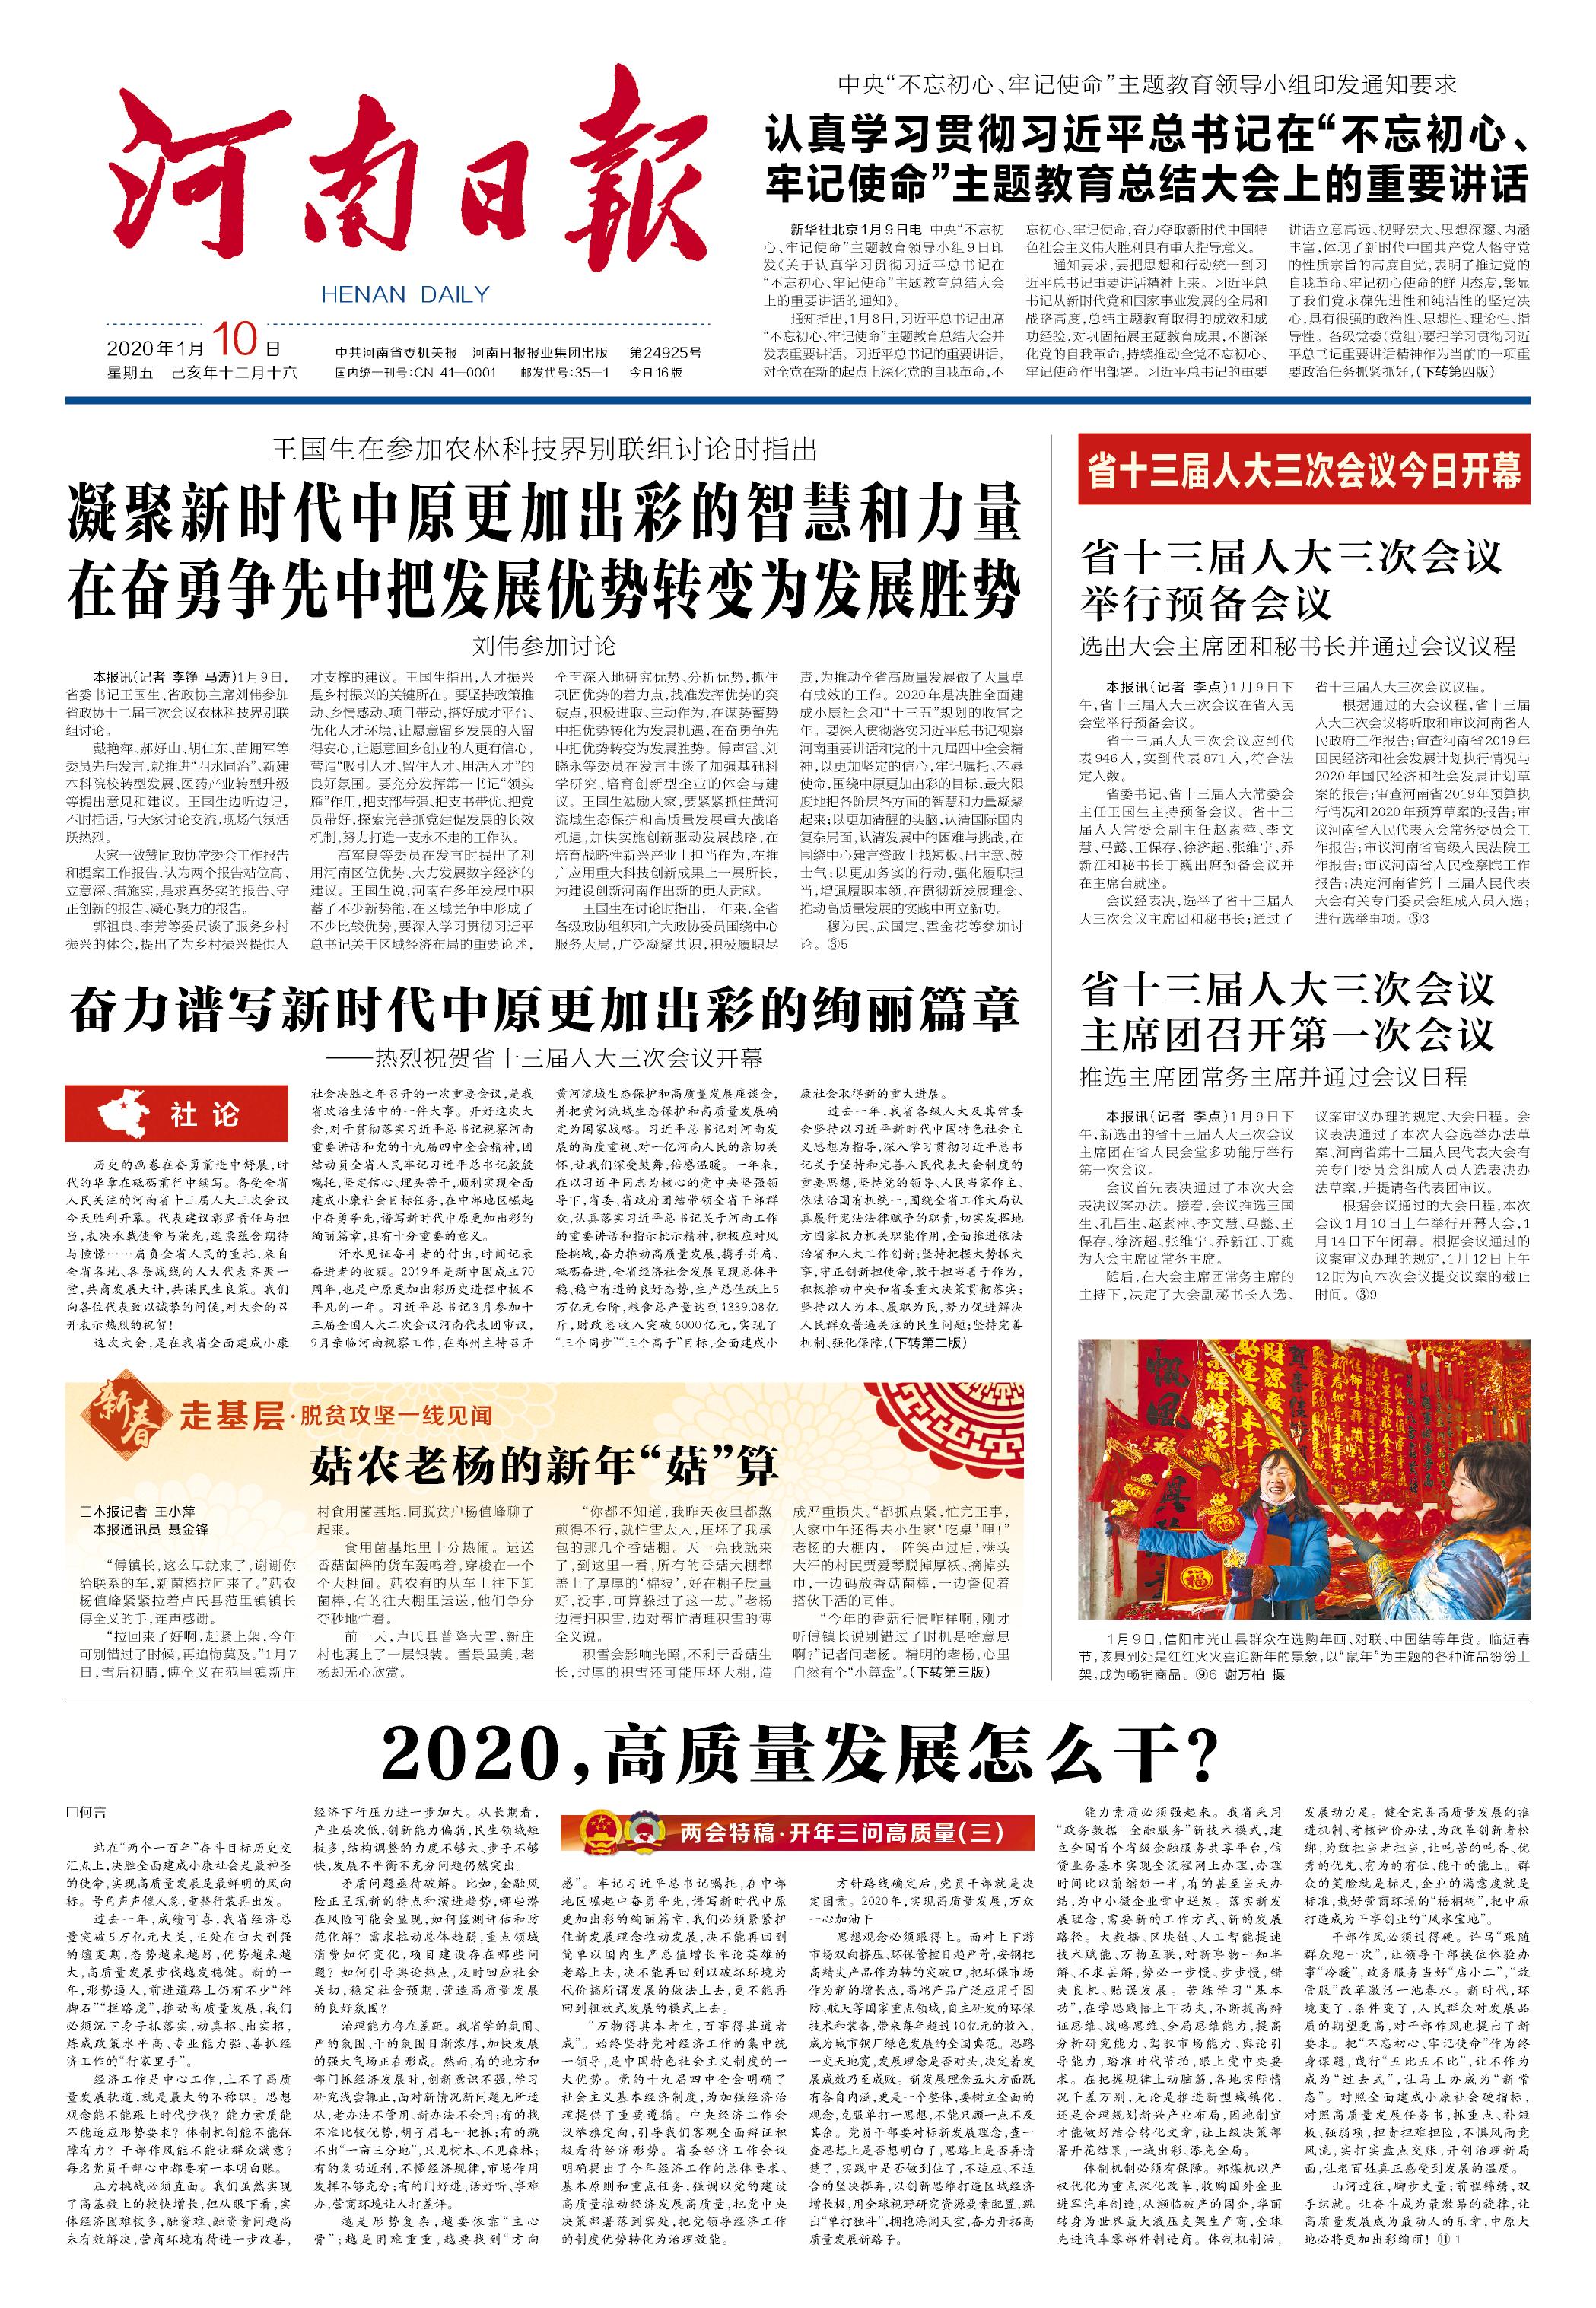 河南印刷公司-排版印刷行业报纸-设计内刊印刷企业报纸